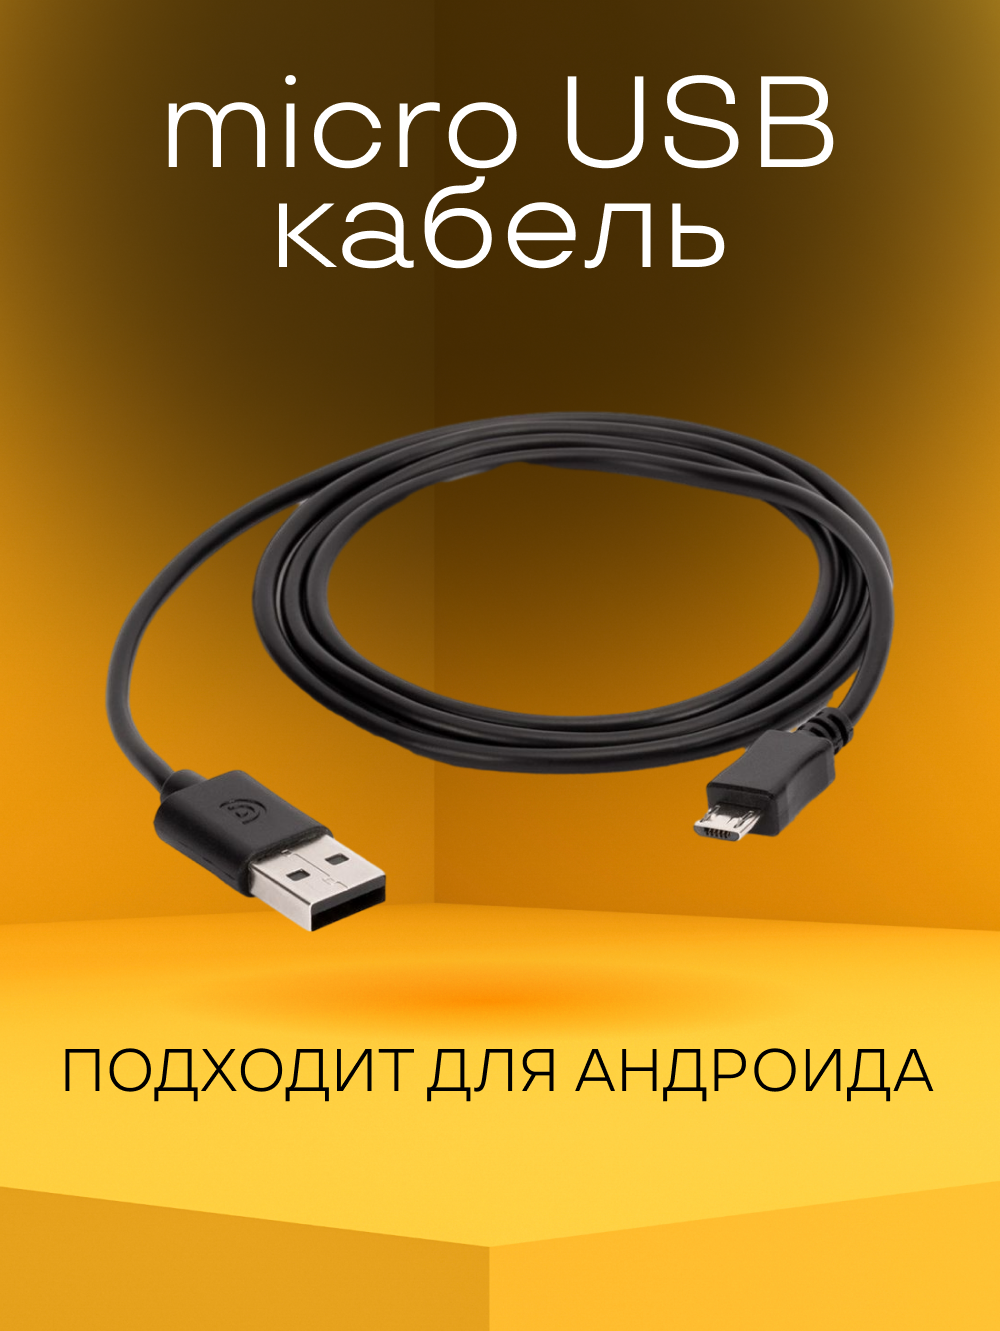 Micro USB кабель для зарядки телефона андроид